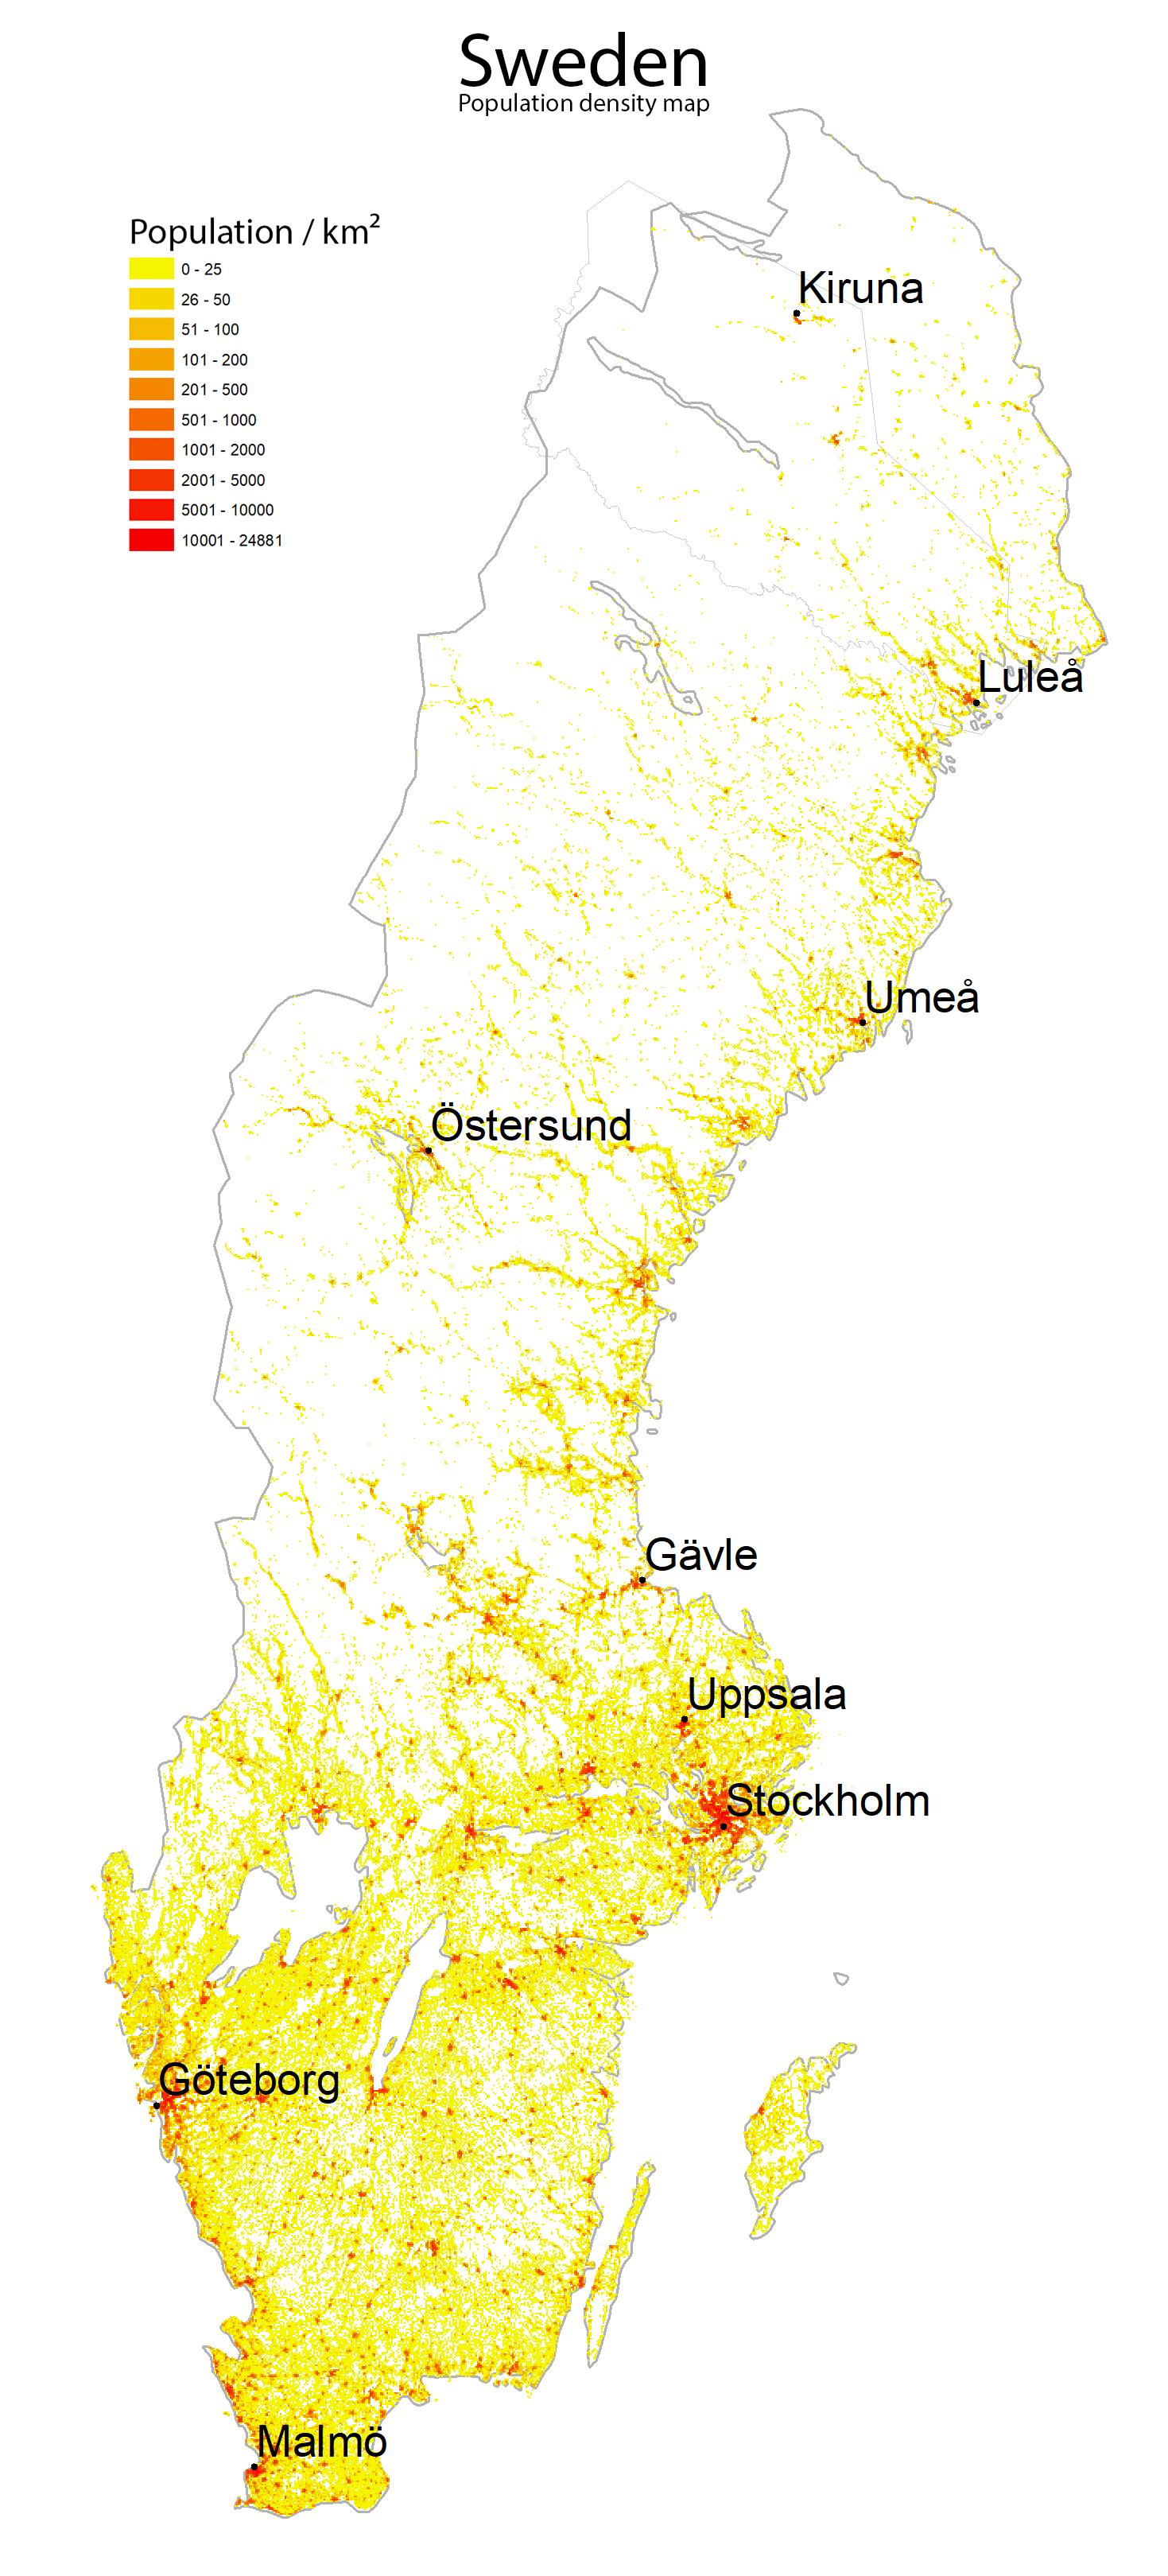 Sweden Population Density Map Population Density Map Of Sweden Northern Europe Europe